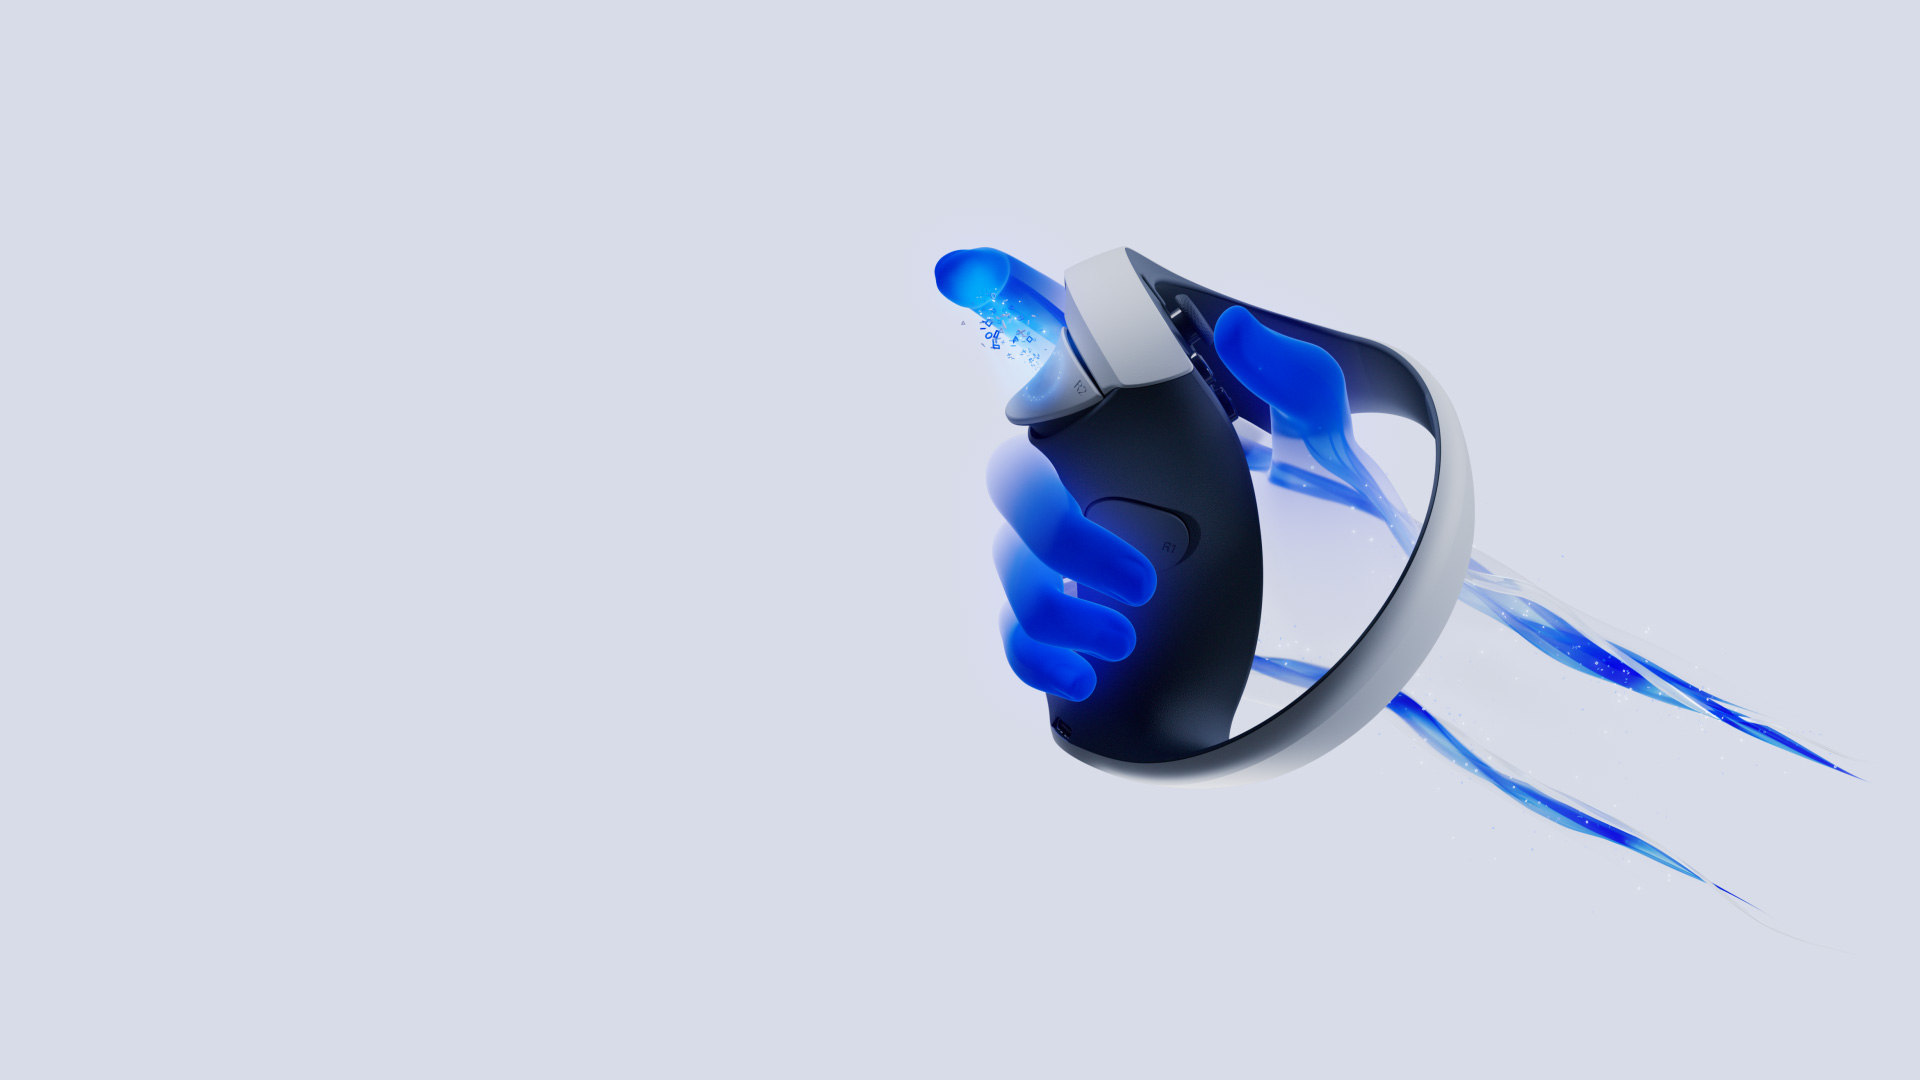 Gafas realidad virtual PlayStation VR2 · Sony · El Corte Inglés